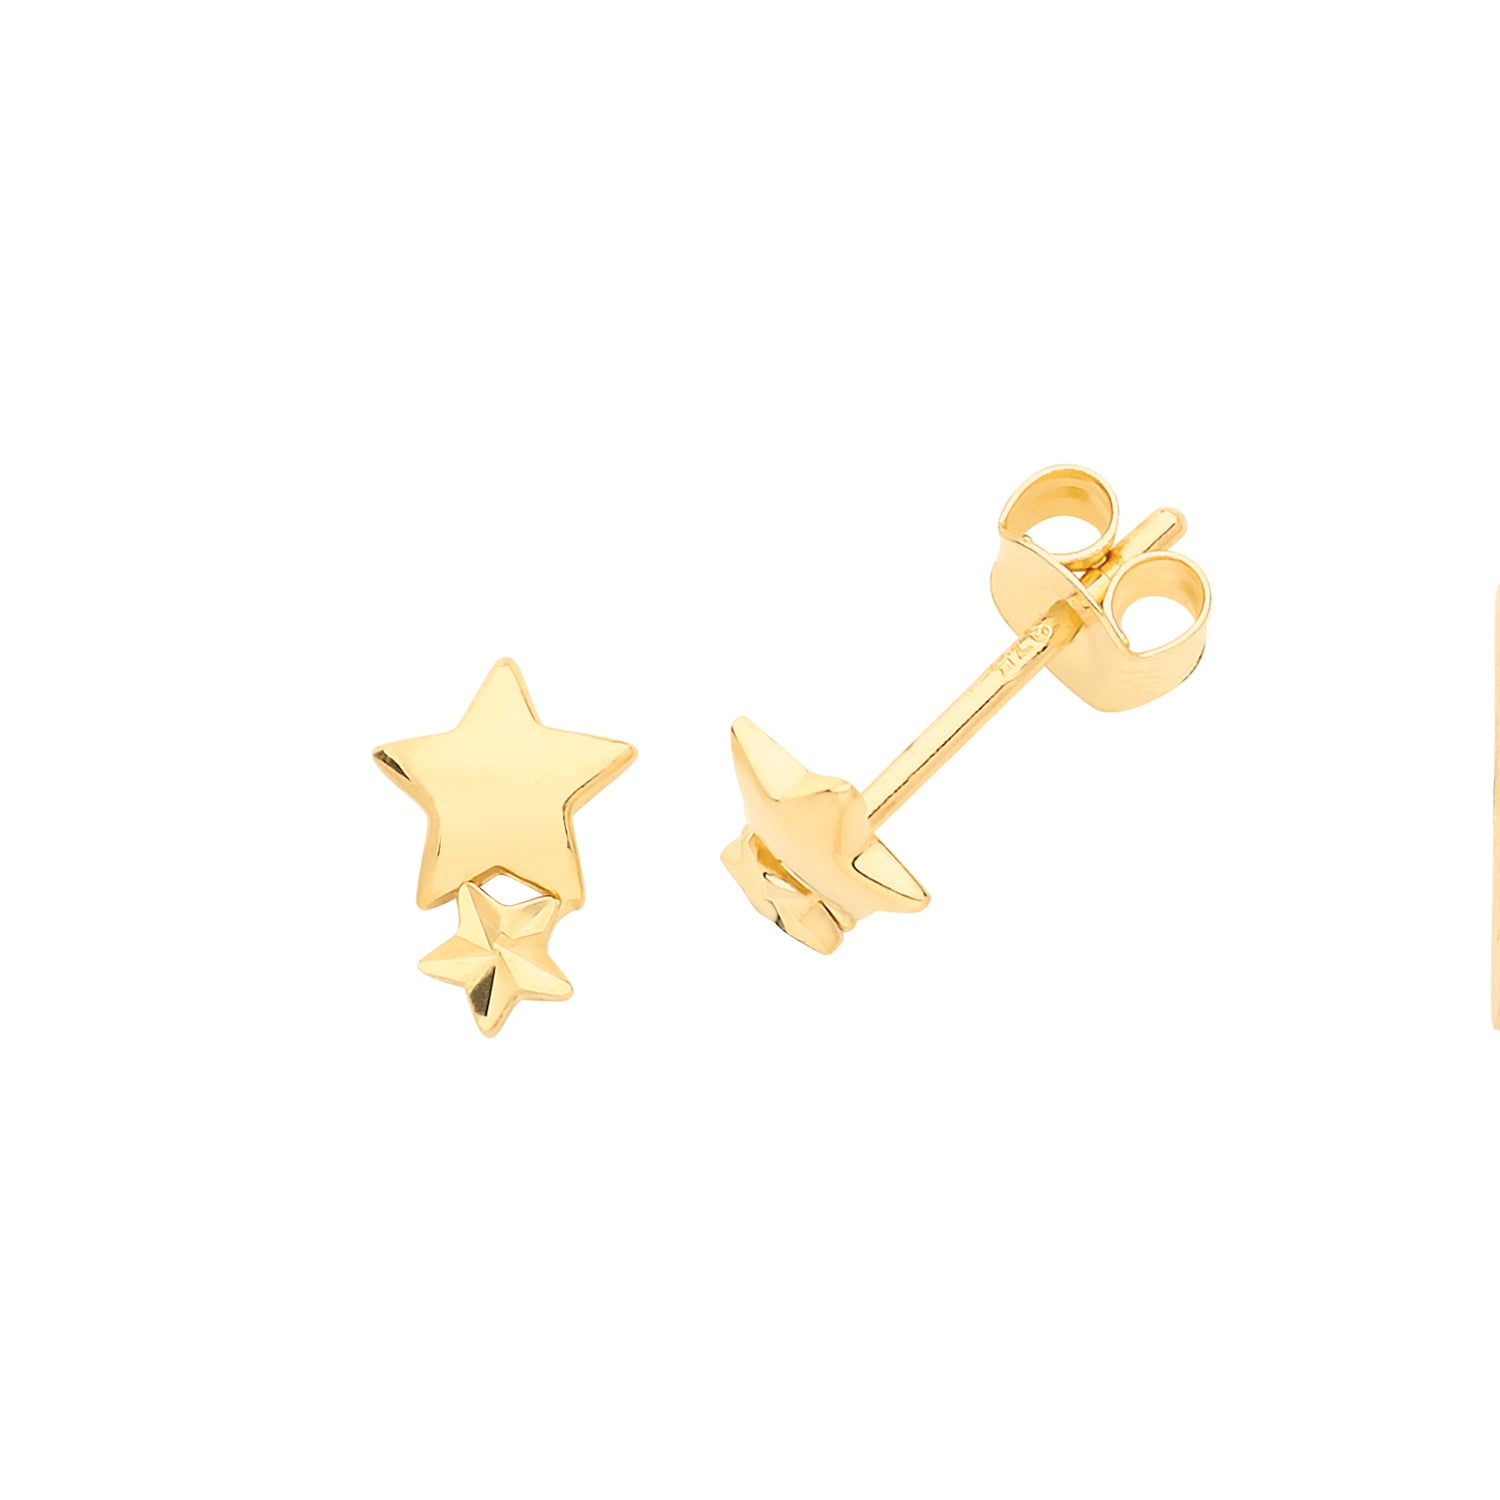 Ear Candy 9ct Gold Two Star Stud Earrings - John Ross Jewellers